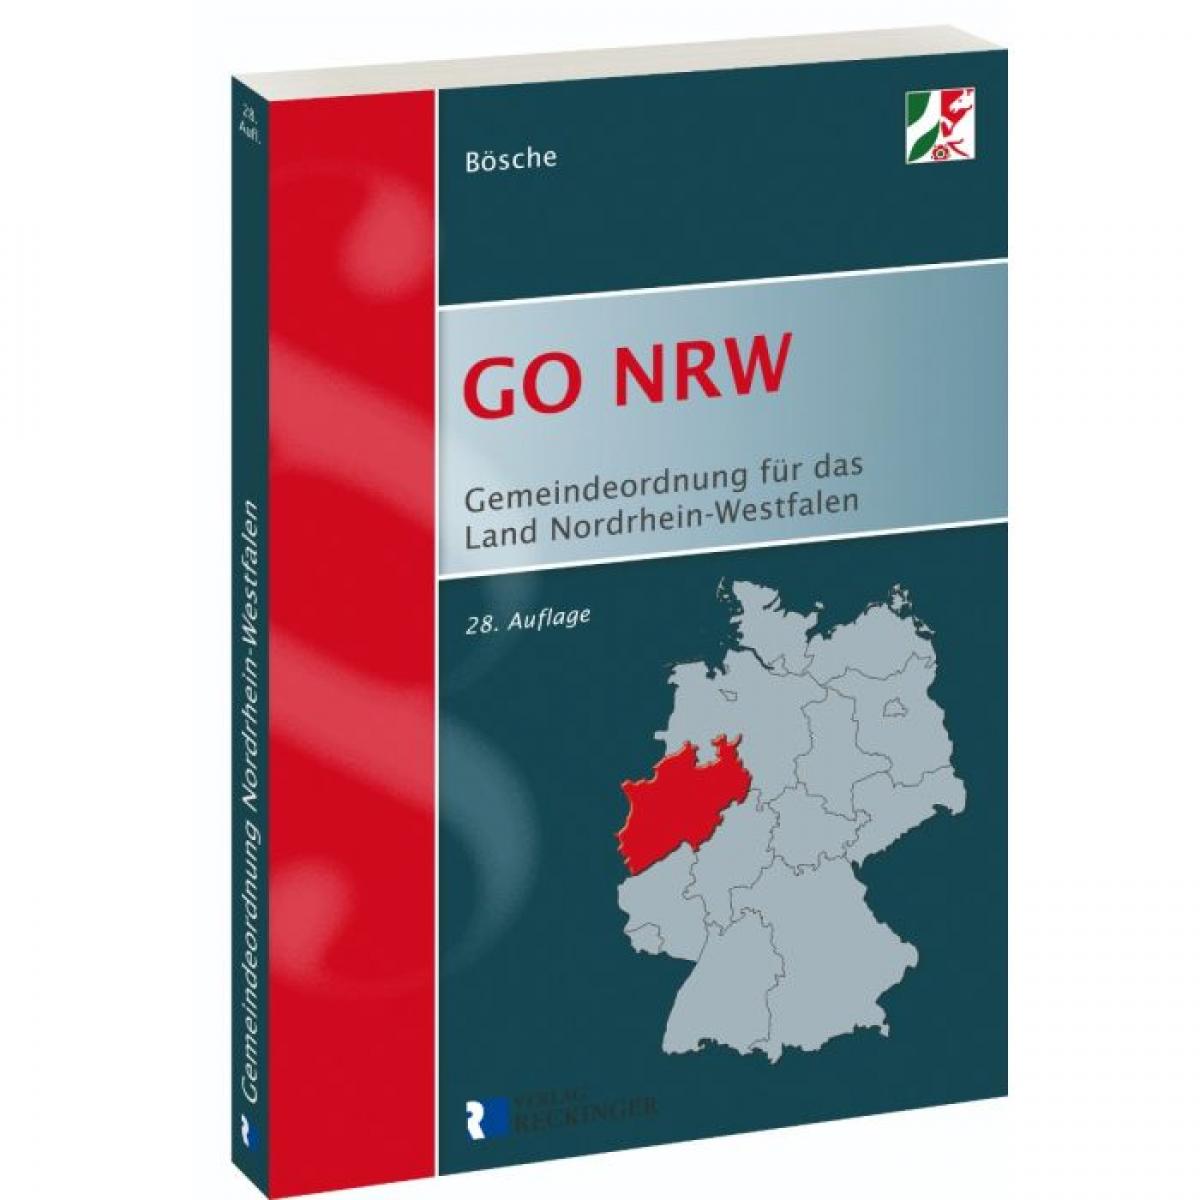 Gemeindeordnung für das Land Nordrhein-Westfalen (GO NRW) - Textausgabe | Bösche